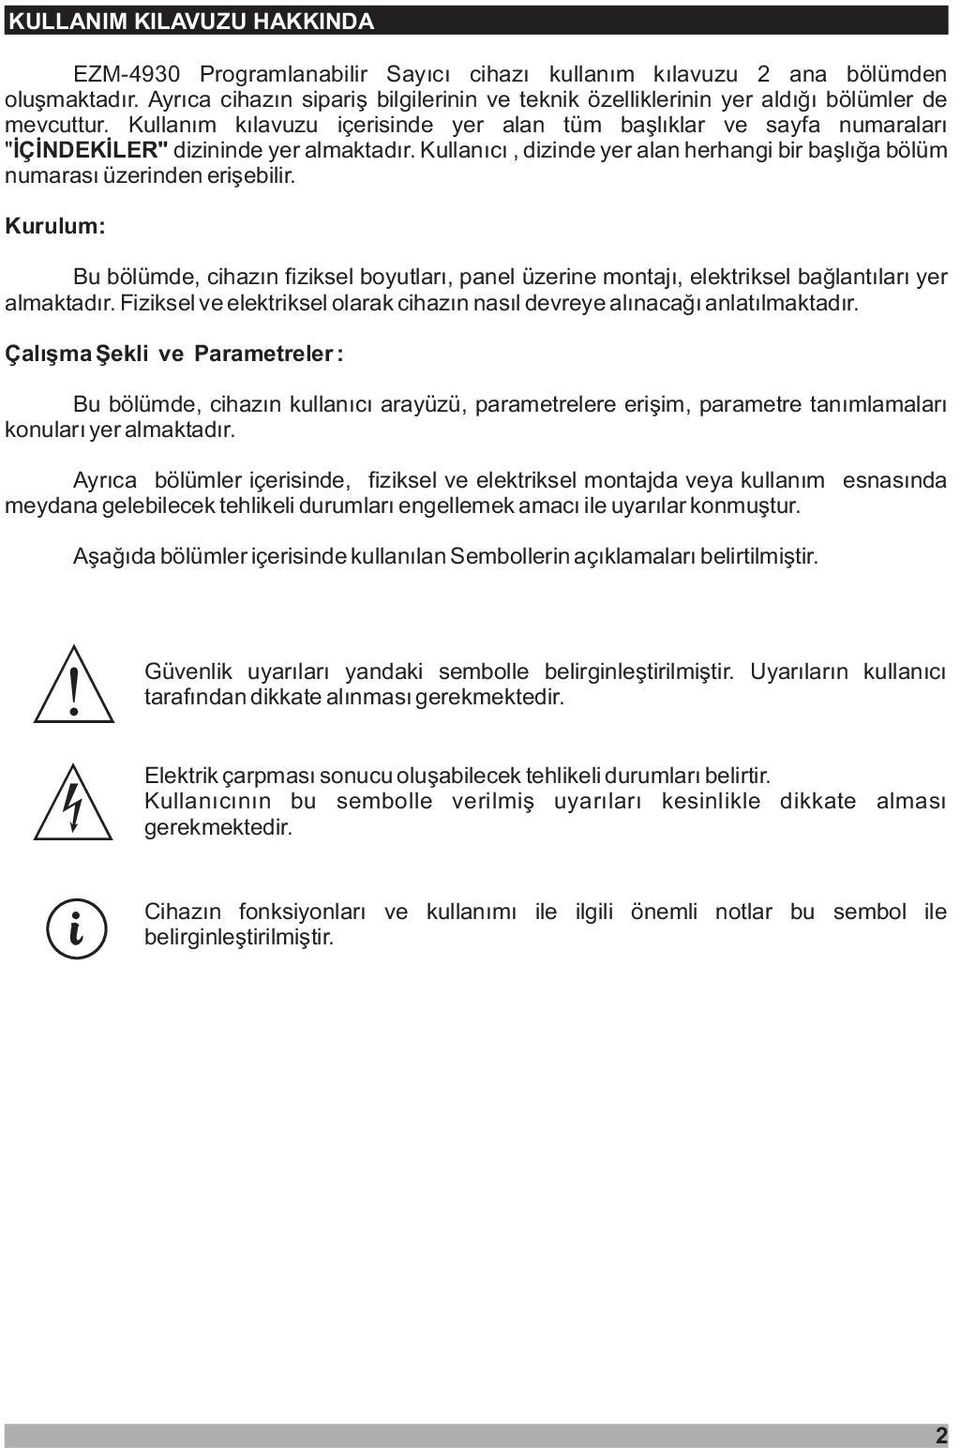 Kullaným kýlavuzu içerisinde yer alan tüm baþlýklar ve sayfa numaralarý " ÝÇÝNDEKÝLER" dizininde yer almaktadýr. Kullanýcý, dizinde yer alan herhangi bir baþlýða bölüm numarasý üzerinden eriþebilir.